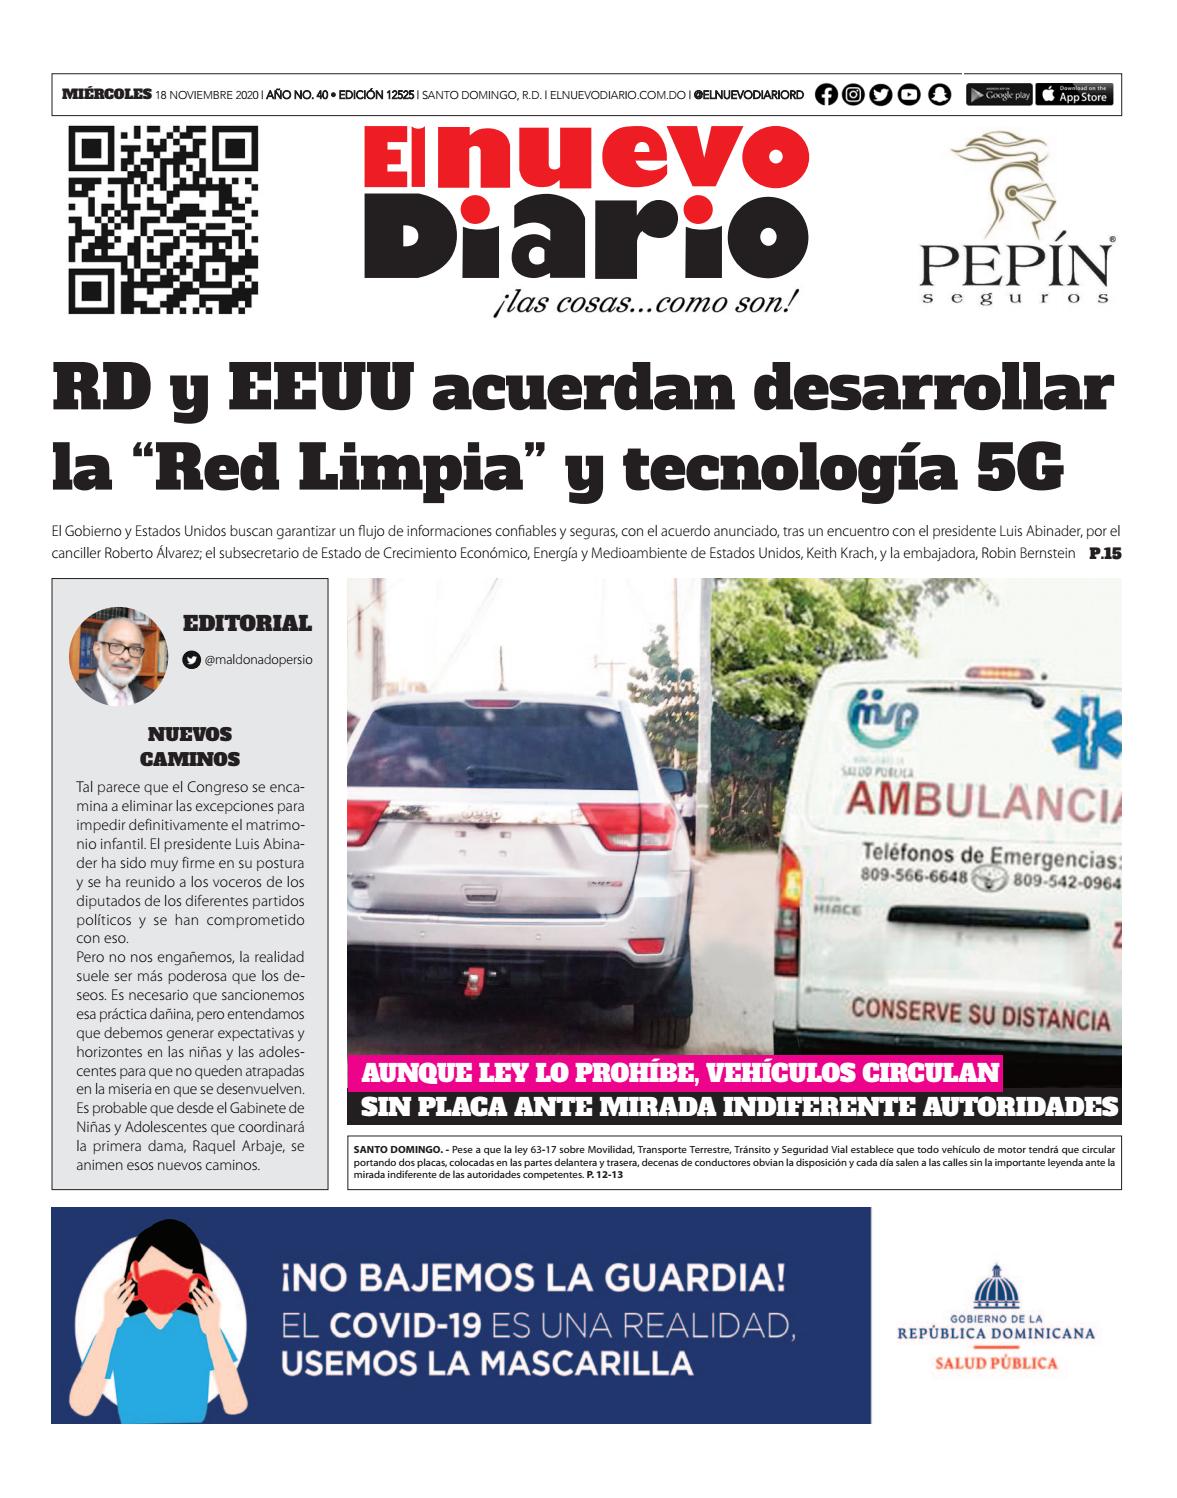 Portada Periódico El Nuevo Diario, Miércoles 18 de Noviembre, 2020